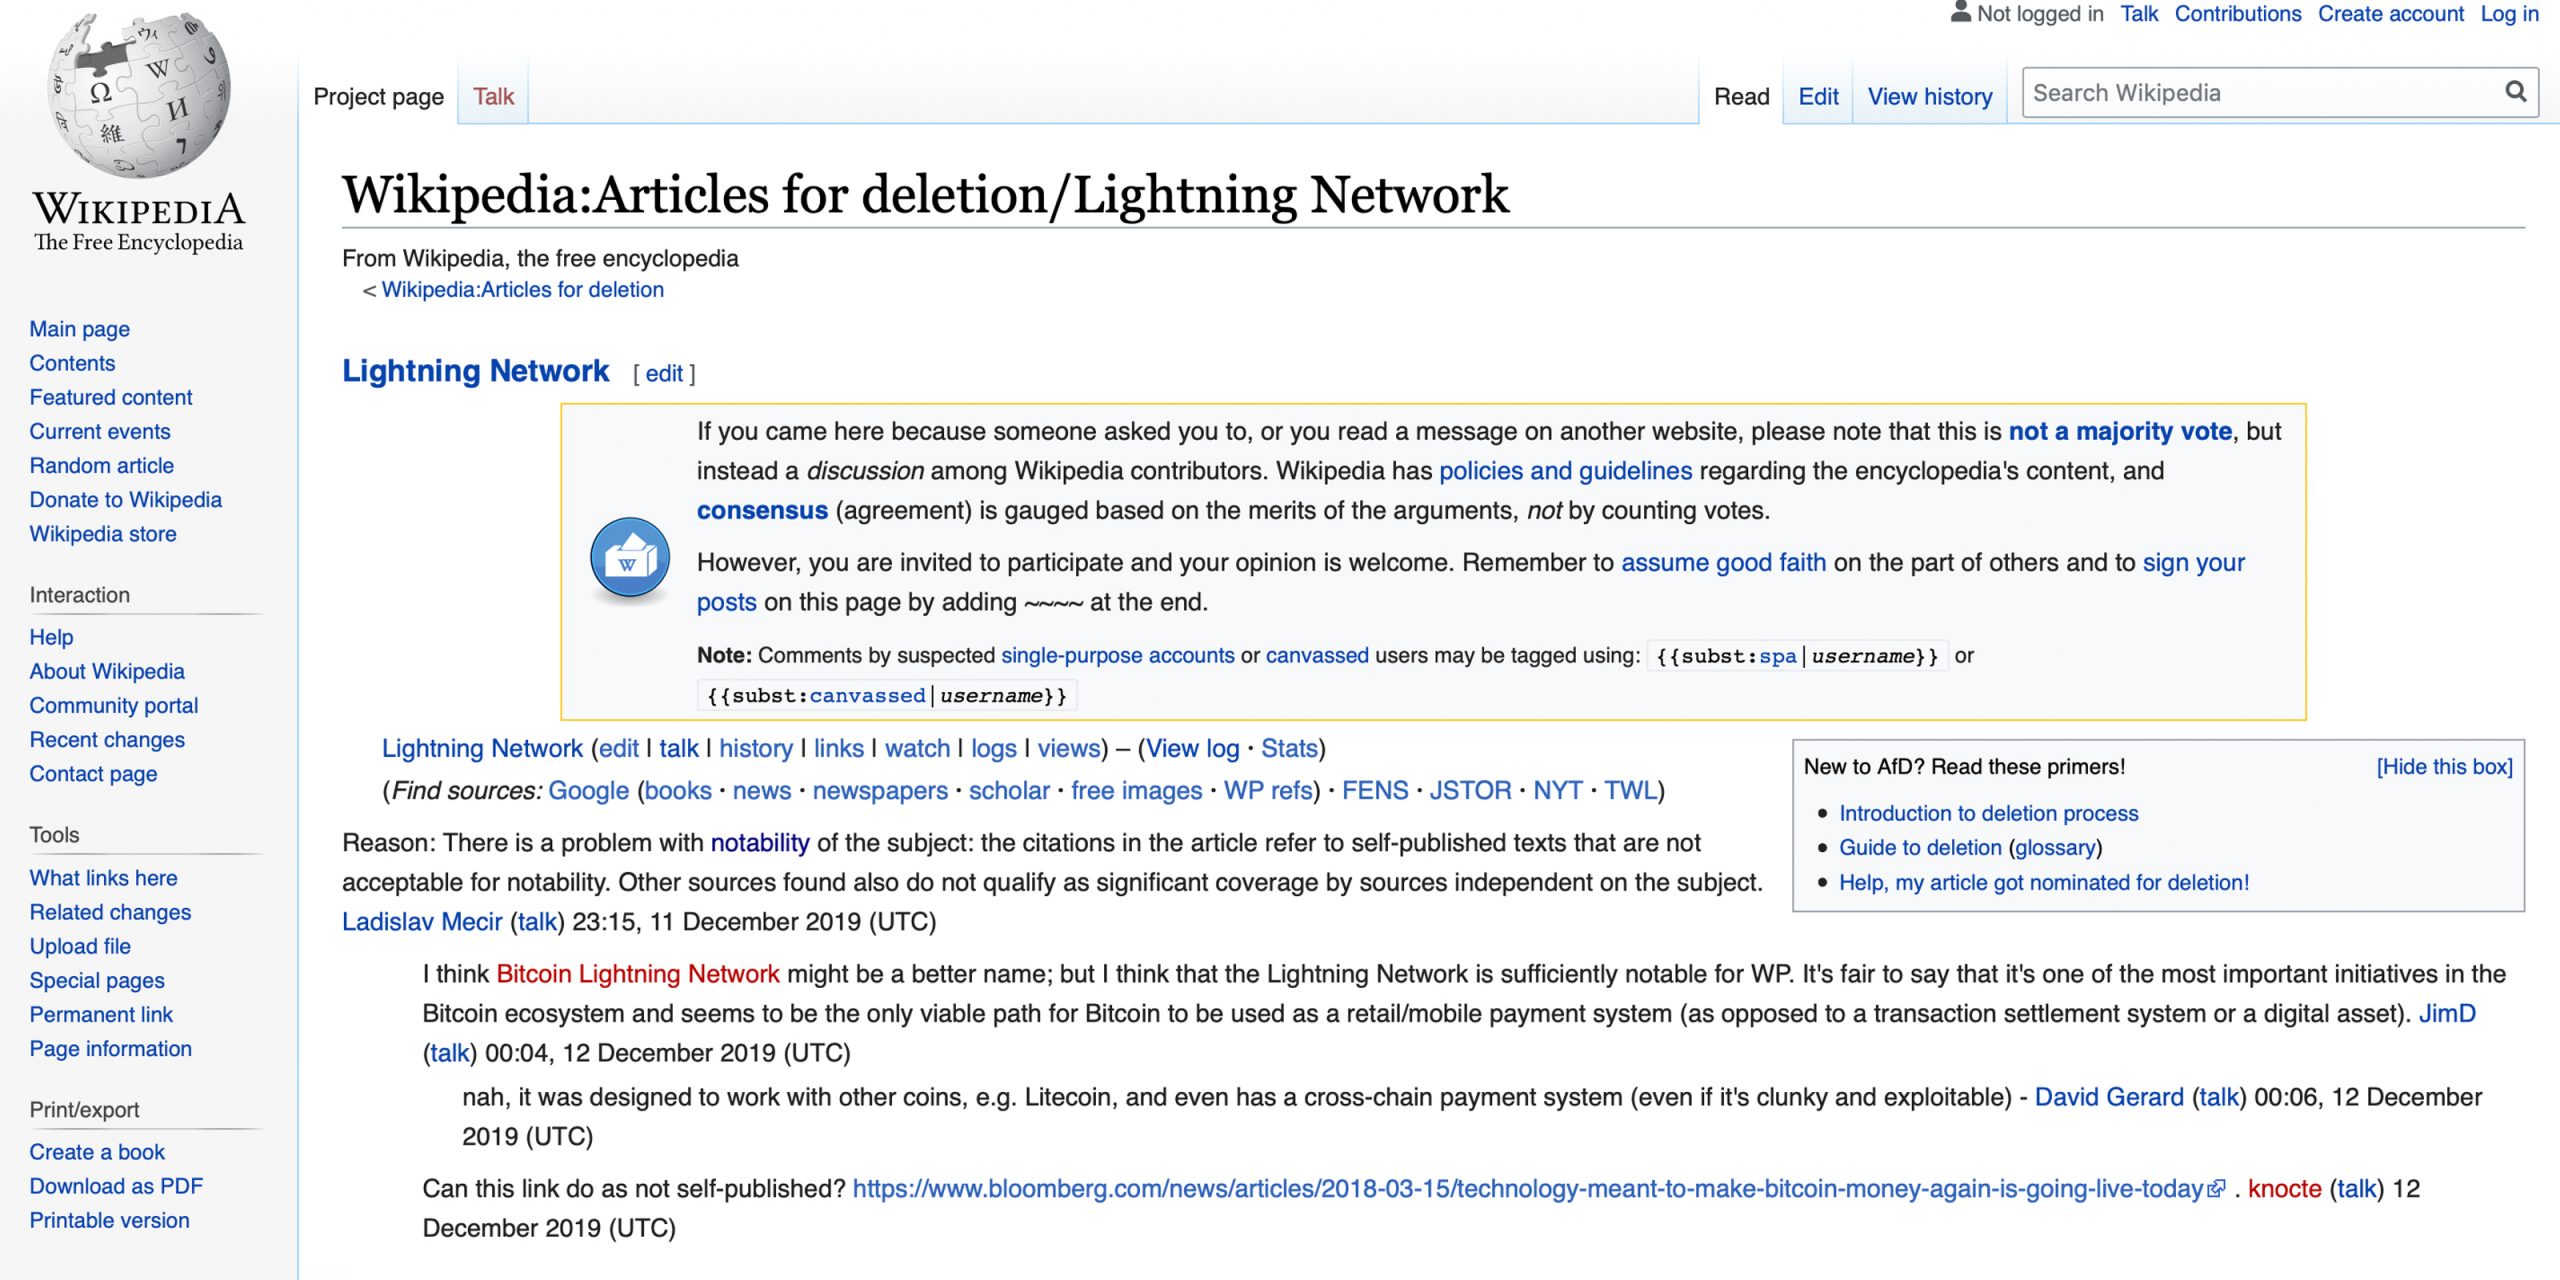 Eliminación de caras de la página Wiki de Lightning Network por falta de notoriedad "width =" 2560 "height =" 1280 "srcset =" https://news.bitcoin.com/wp-content/uploads/2019/12/wikiworld-scaled.jpg 2560w , https://news.bitcoin.com/wp-content/uploads/2019/12/wikiworld-300x150.jpg 300w, https://news.bitcoin.com/wp-content/uploads/2019/12/wikiworld- 1024x512.jpg 1024w, https://news.bitcoin.com/wp-content/uploads/2019/12/wikiworld-768x384.jpg 768w, https://news.bitcoin.com/wp-content/uploads/2019/ 12 / wikiworld-1536x768.jpg 1536w, https://news.bitcoin.com/wp-content/uploads/2019/12/wikiworld-2048x1024.jpg 2048w, https://news.bitcoin.com/wp-content/ uploads / 2019/12 / wikiworld-696x348.jpg 696w, https://news.bitcoin.com/wp-content/uploads/2019/12/wikiworld-1392x696.jpg 1392w, https://news.bitcoin.com/ wp-content / uploads / 2019/12 / wikiworld-1068x534.jpg 1068w, https://news.bitcoin.com/wp-content/uploads/2019/12/wikiworld-840x420.jpg 840w, https: // noticias. bitcoin.com/wp-content/uploads/2019/12/wikiworld-1920x960.jpg 1920w "tamaños = "(ancho máximo: 2560px) 100vw, 2560px